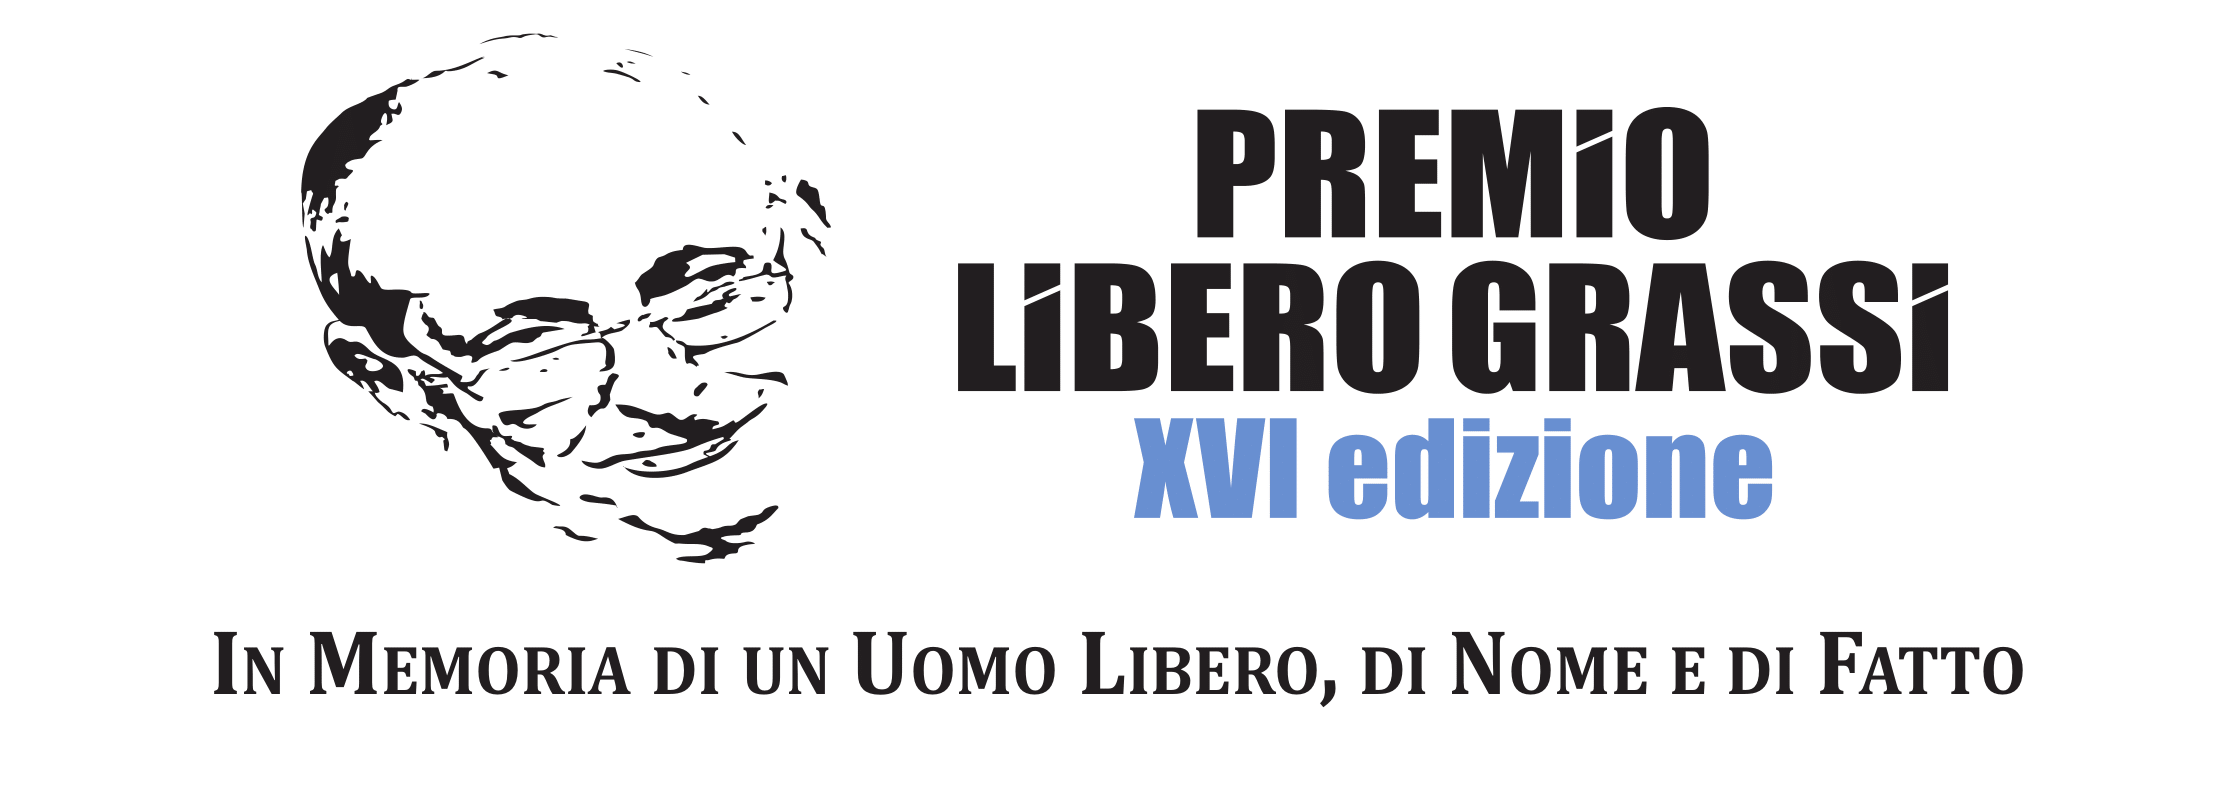 Logo PLG XVI Ed 1